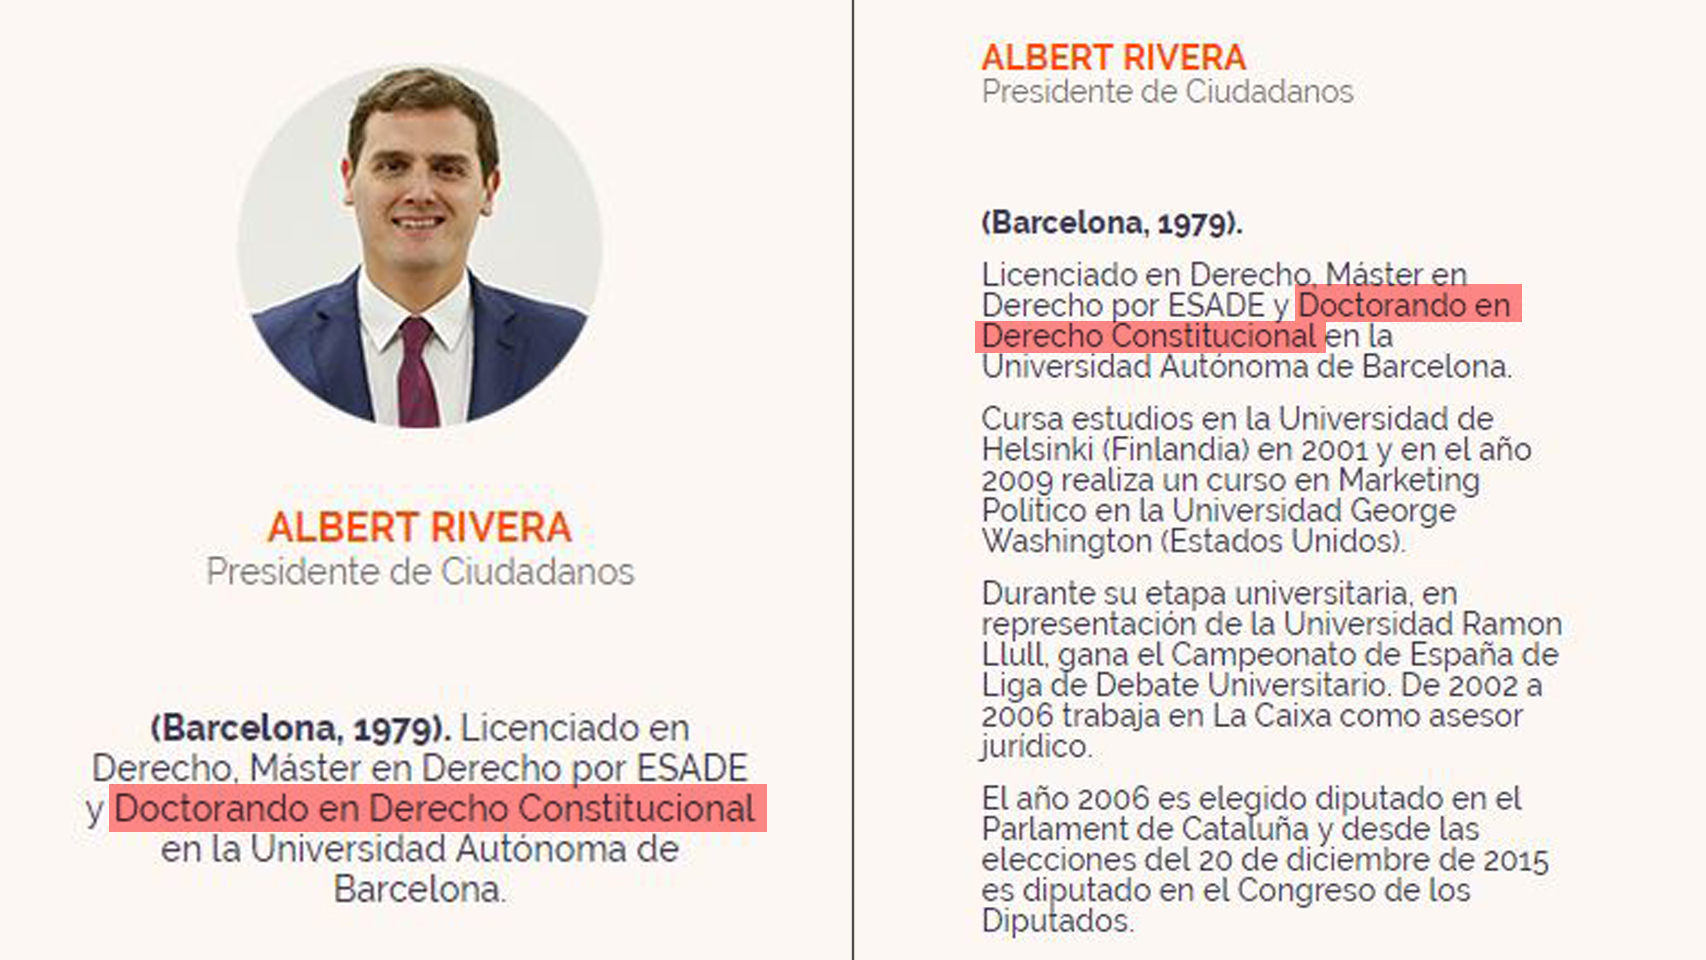 El currículum de Albert Rivera en la web de Ciudadanos